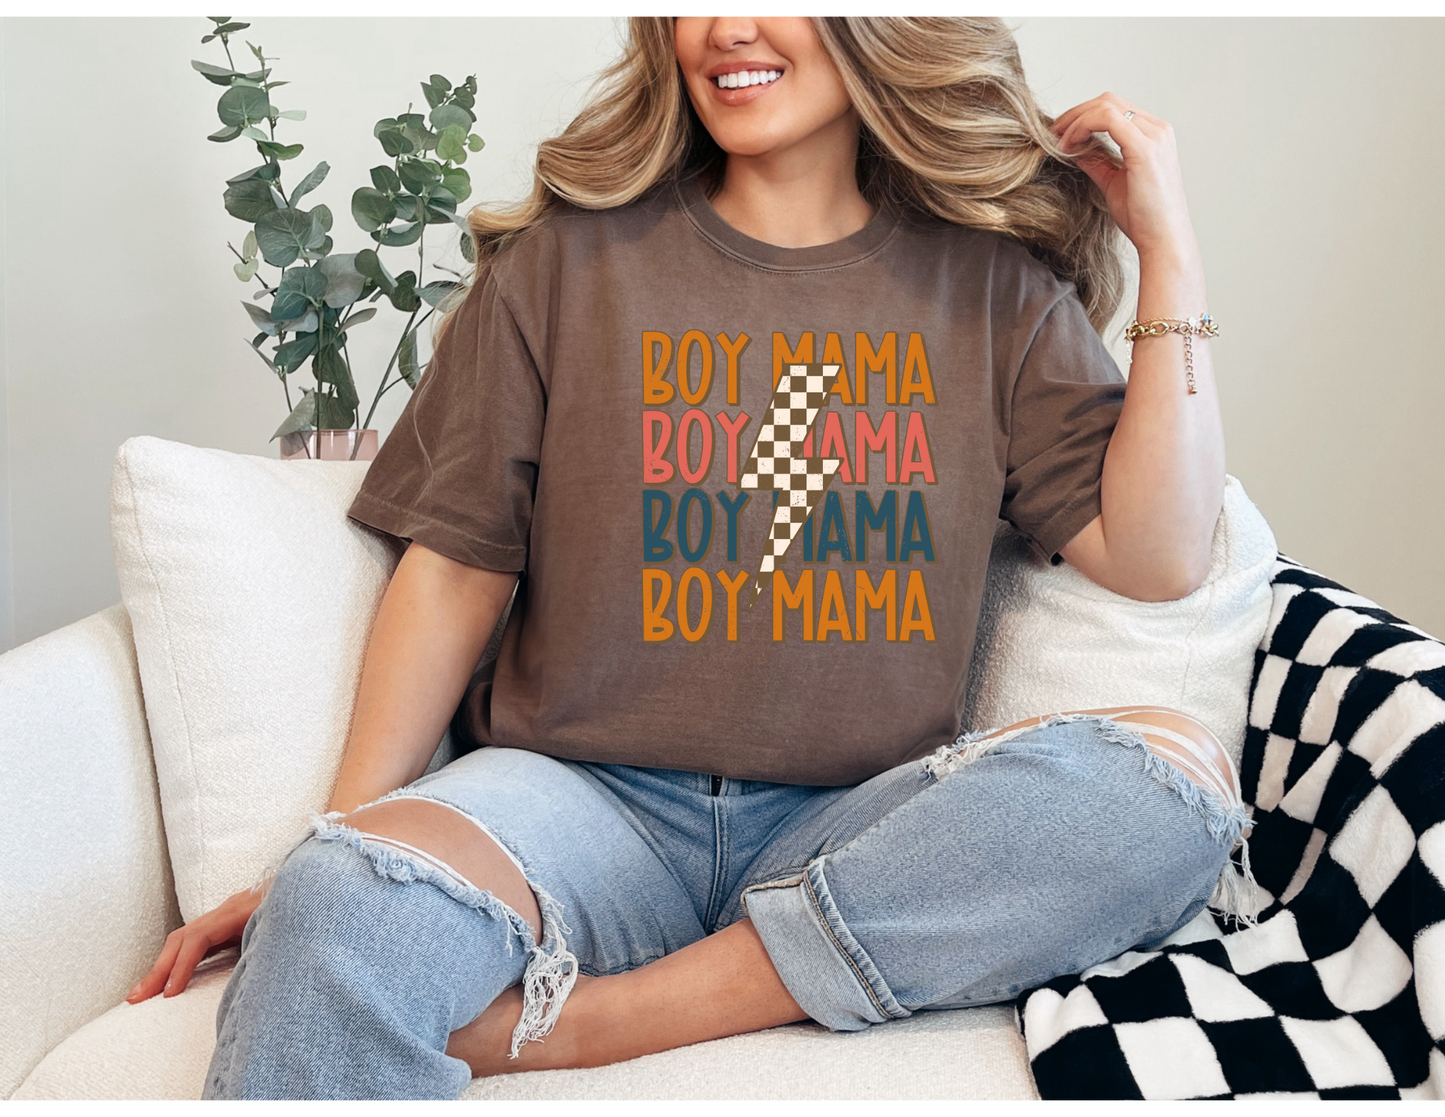 Boy Mama Shirt